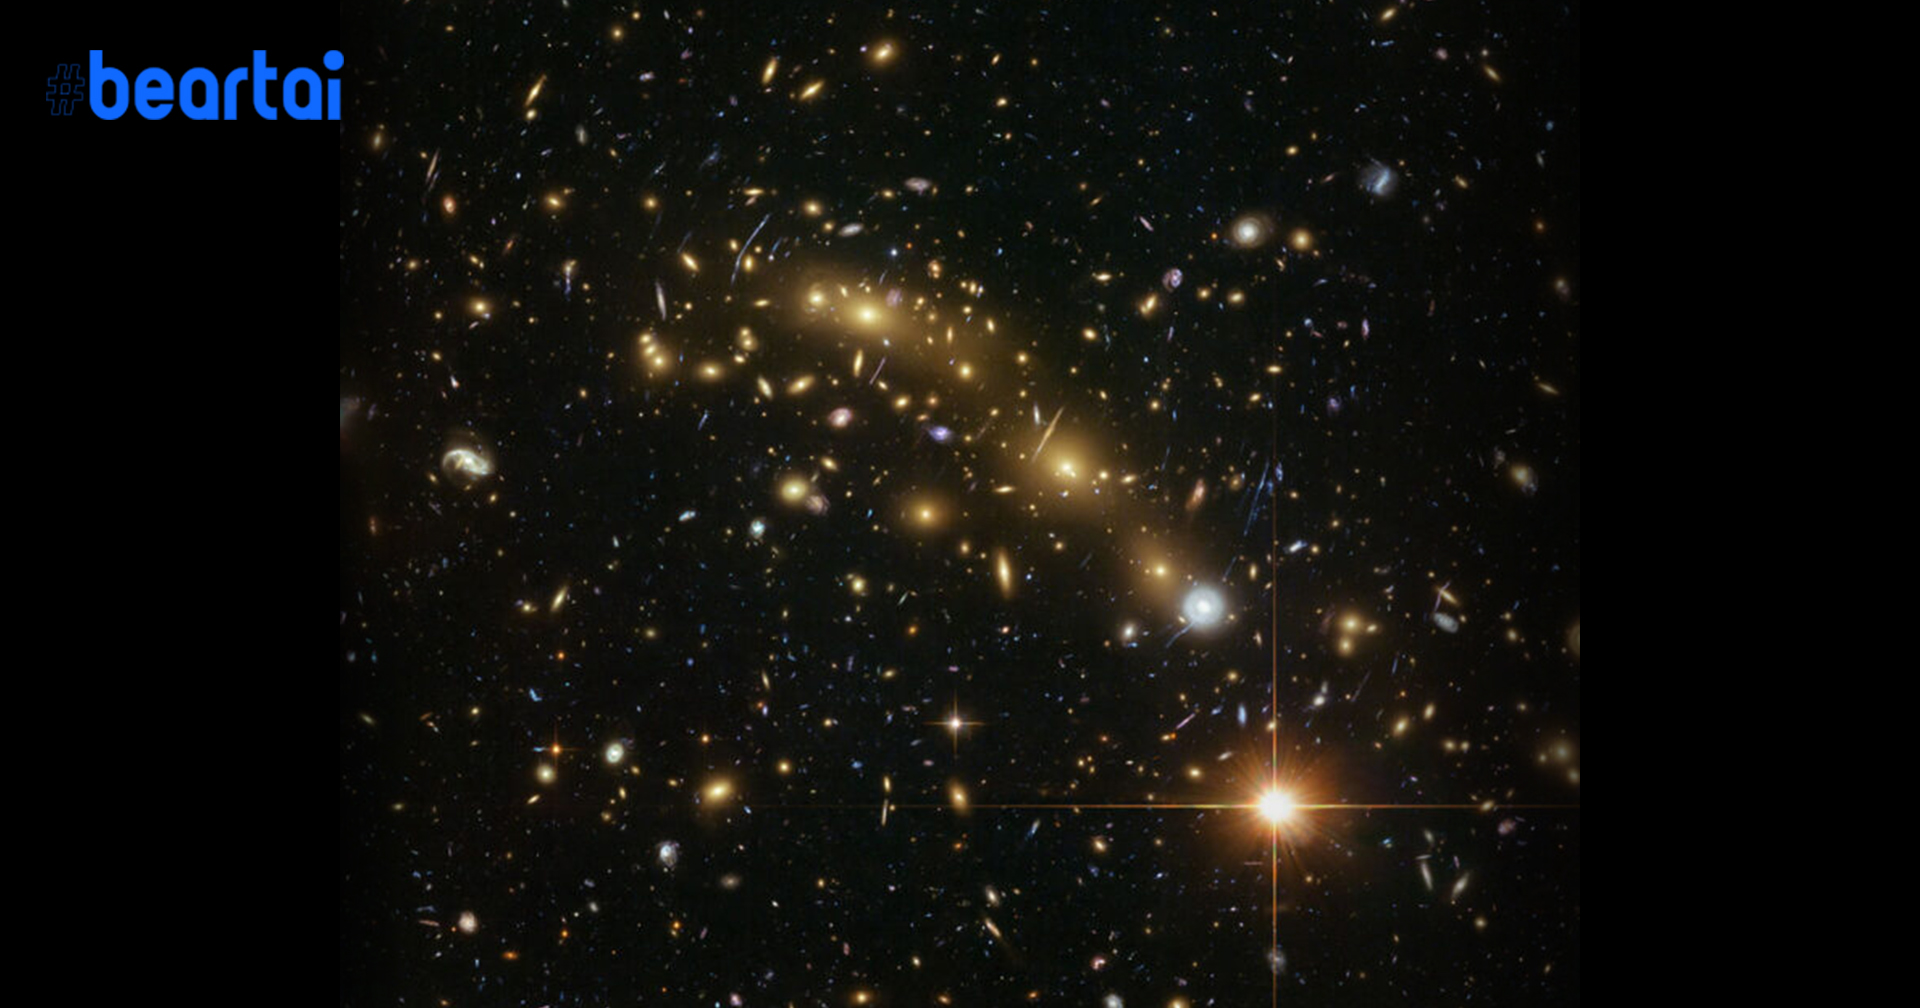 นักวิทย์พบวิธีส่อง ‘สสารมืด’ ได้ผลลัพธ์เกินคาด นำมาสู่ปริศนาใหม่!